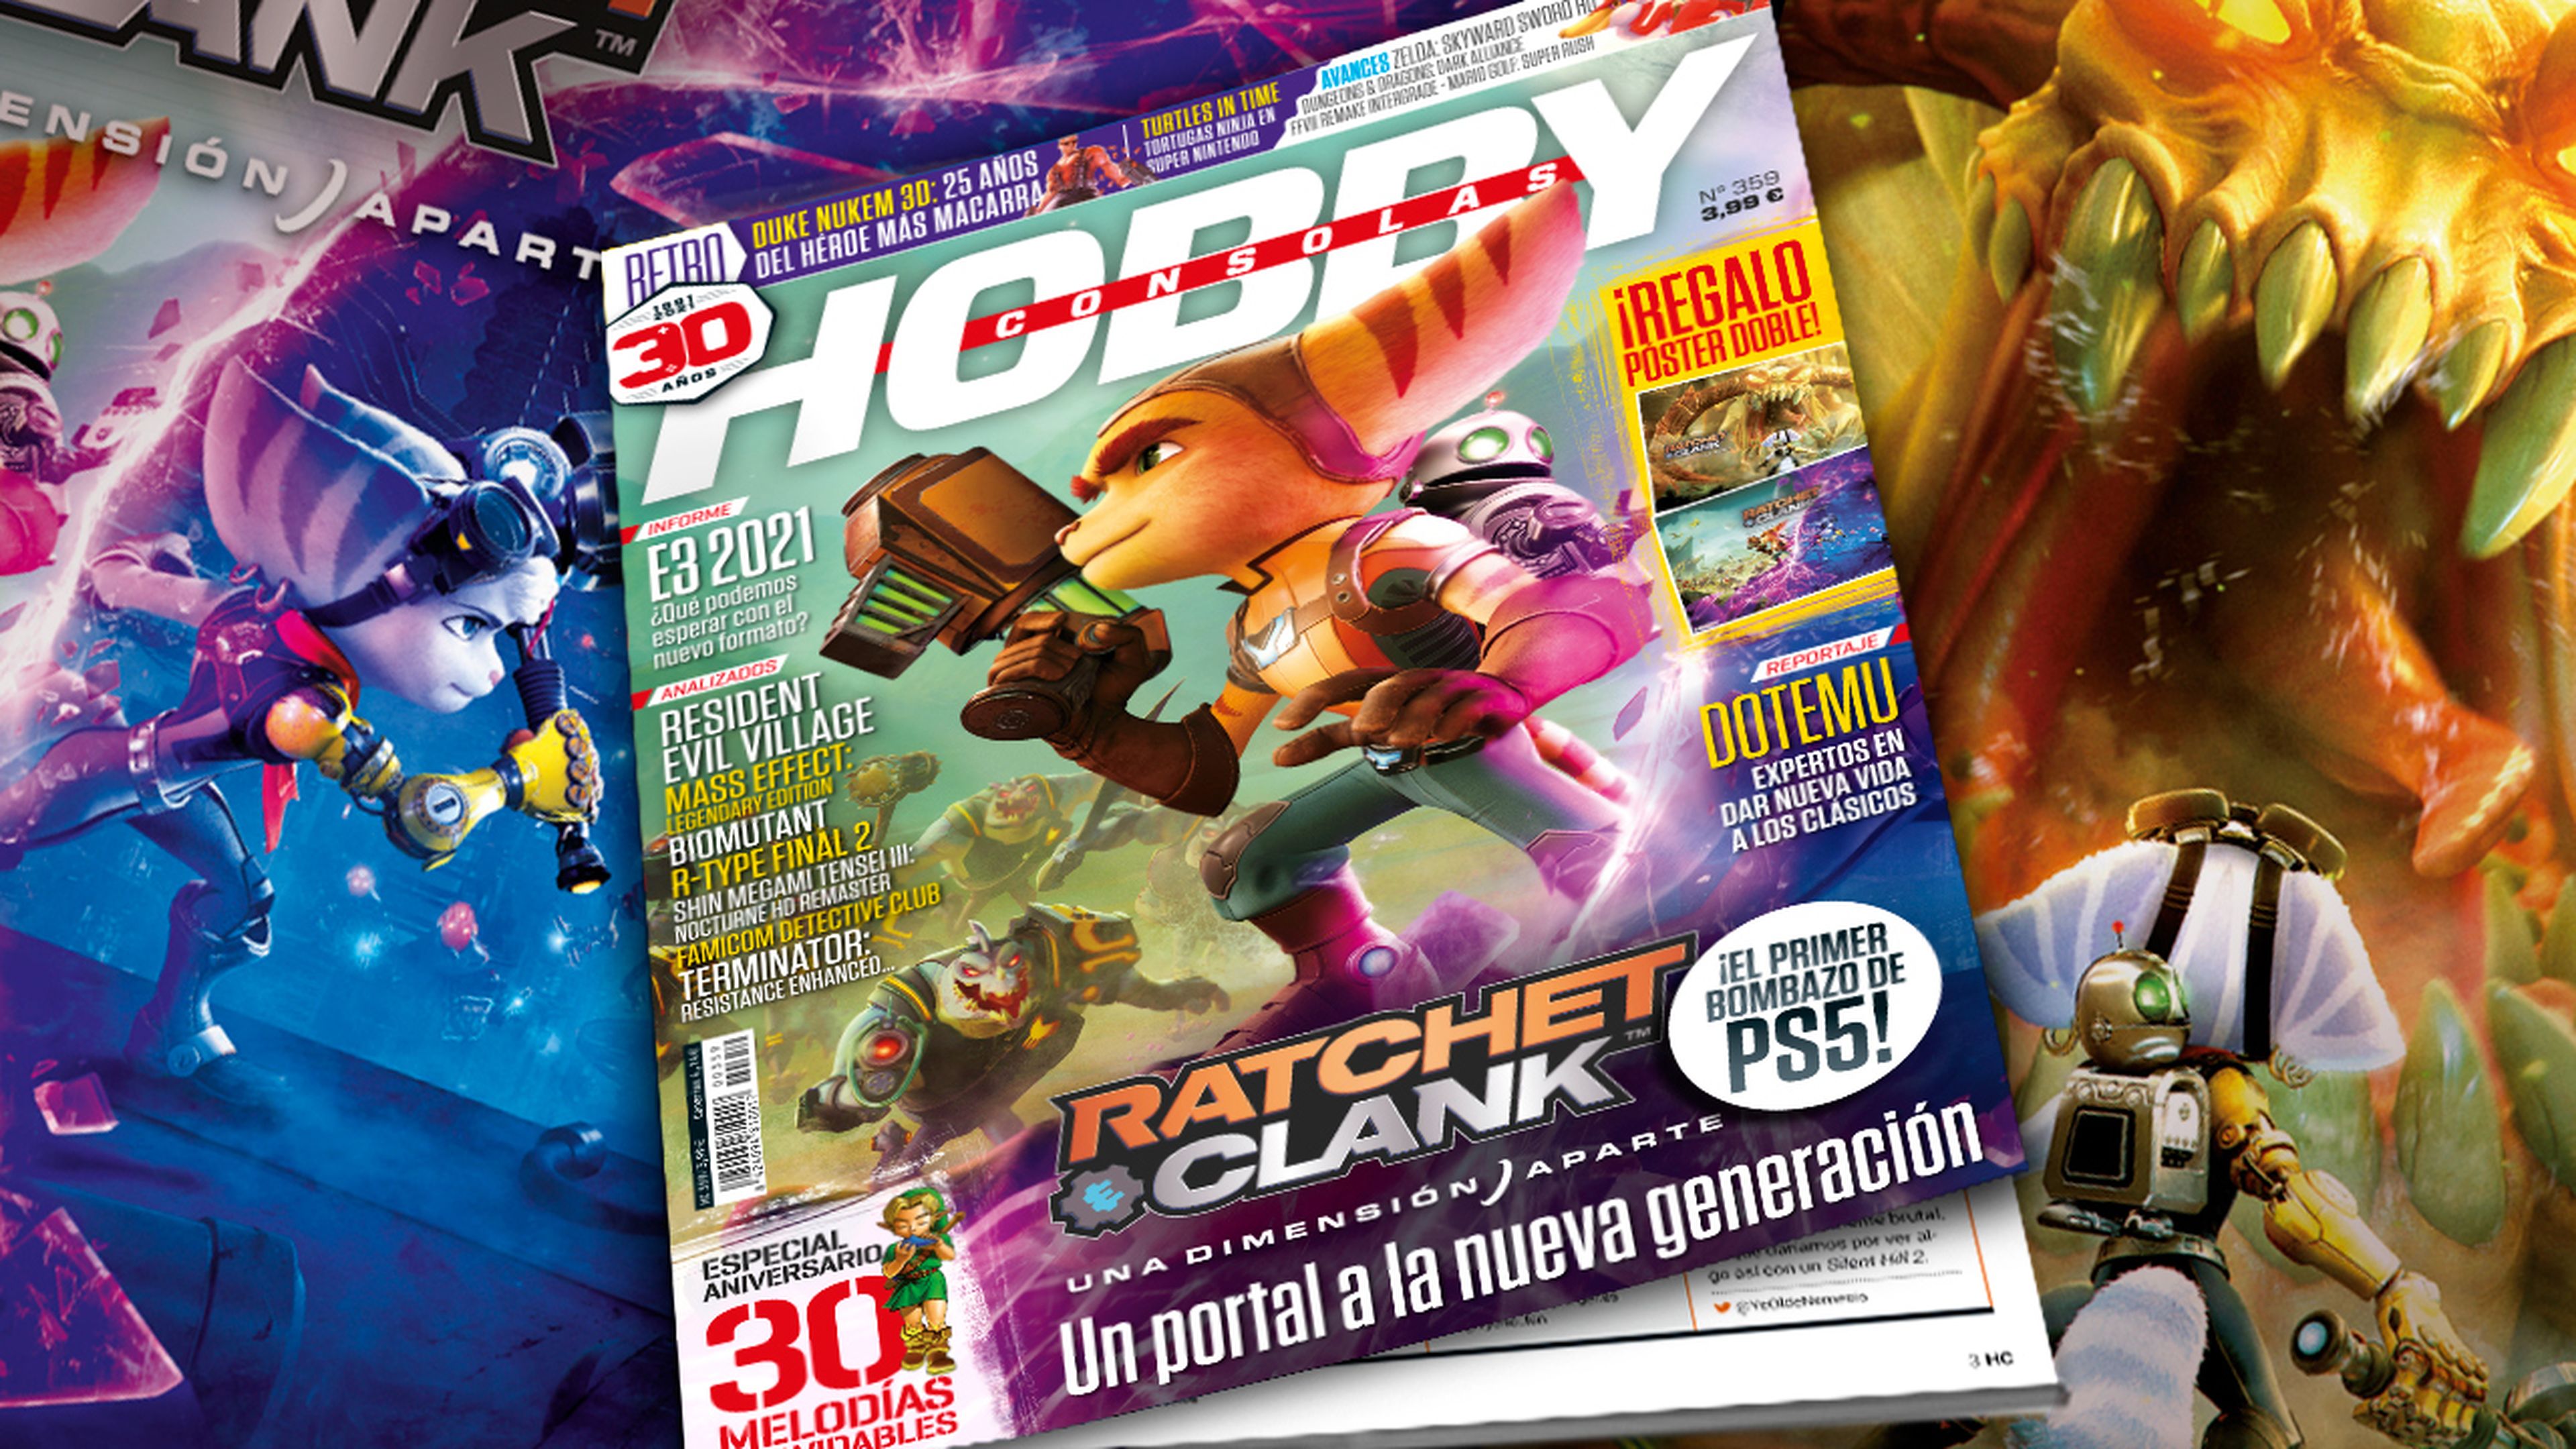 Hobby Consolas 359, a la venta con Ratchet & Clank: Una dimensión aparte en portada y en un póster doble